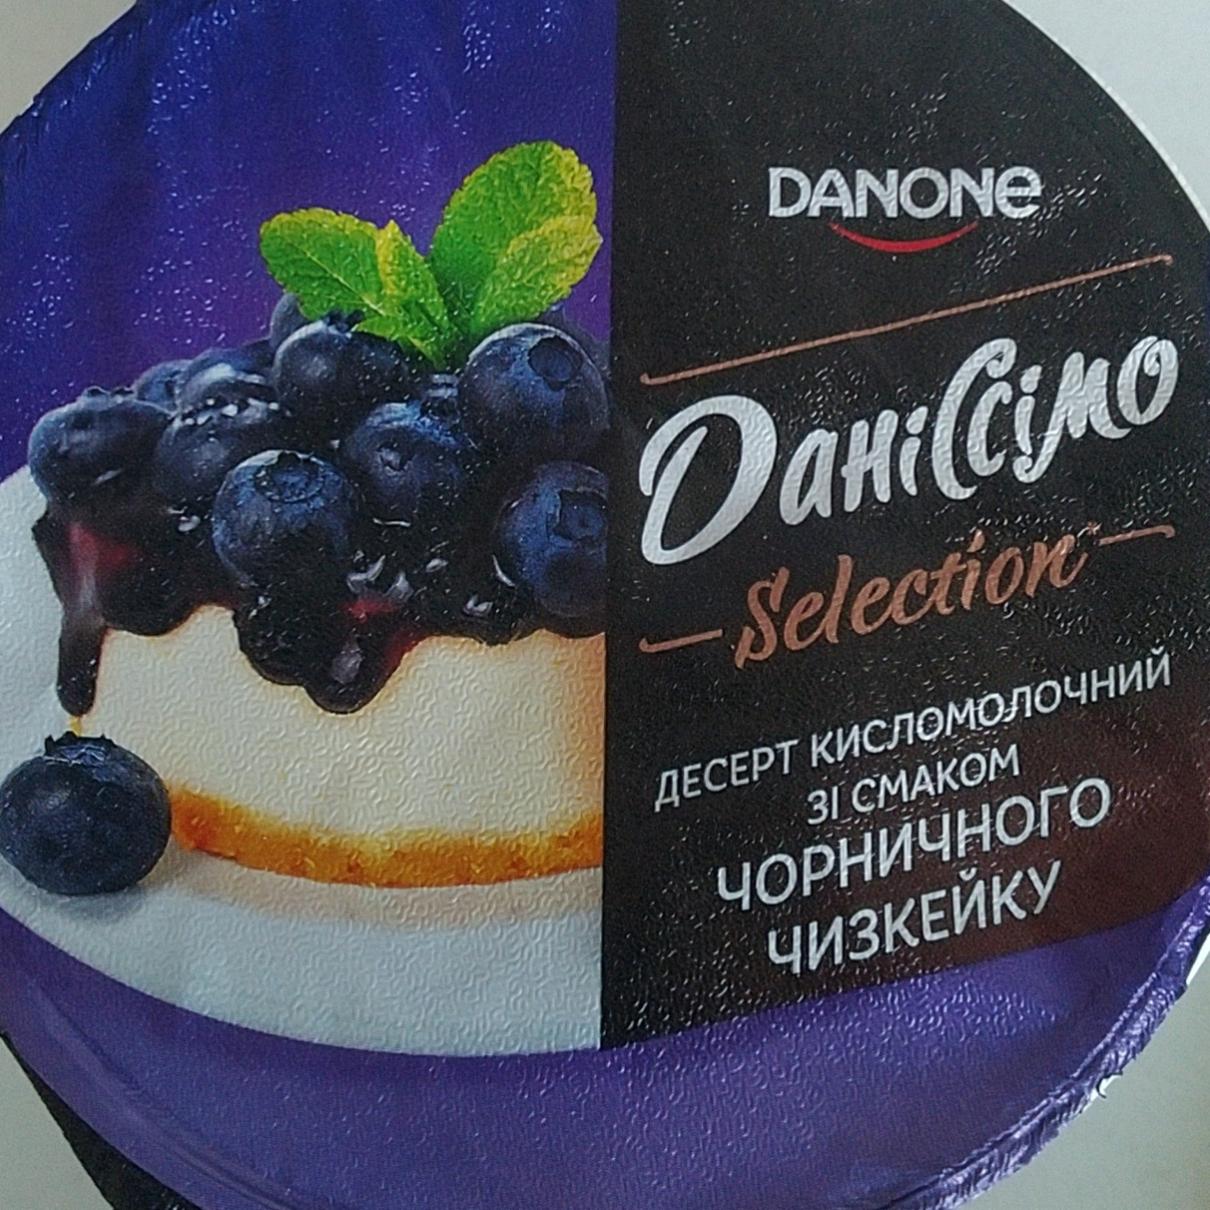 Фото - Десерт кисломолочный со вкусом черничного чизкейка Даниссимо Danone